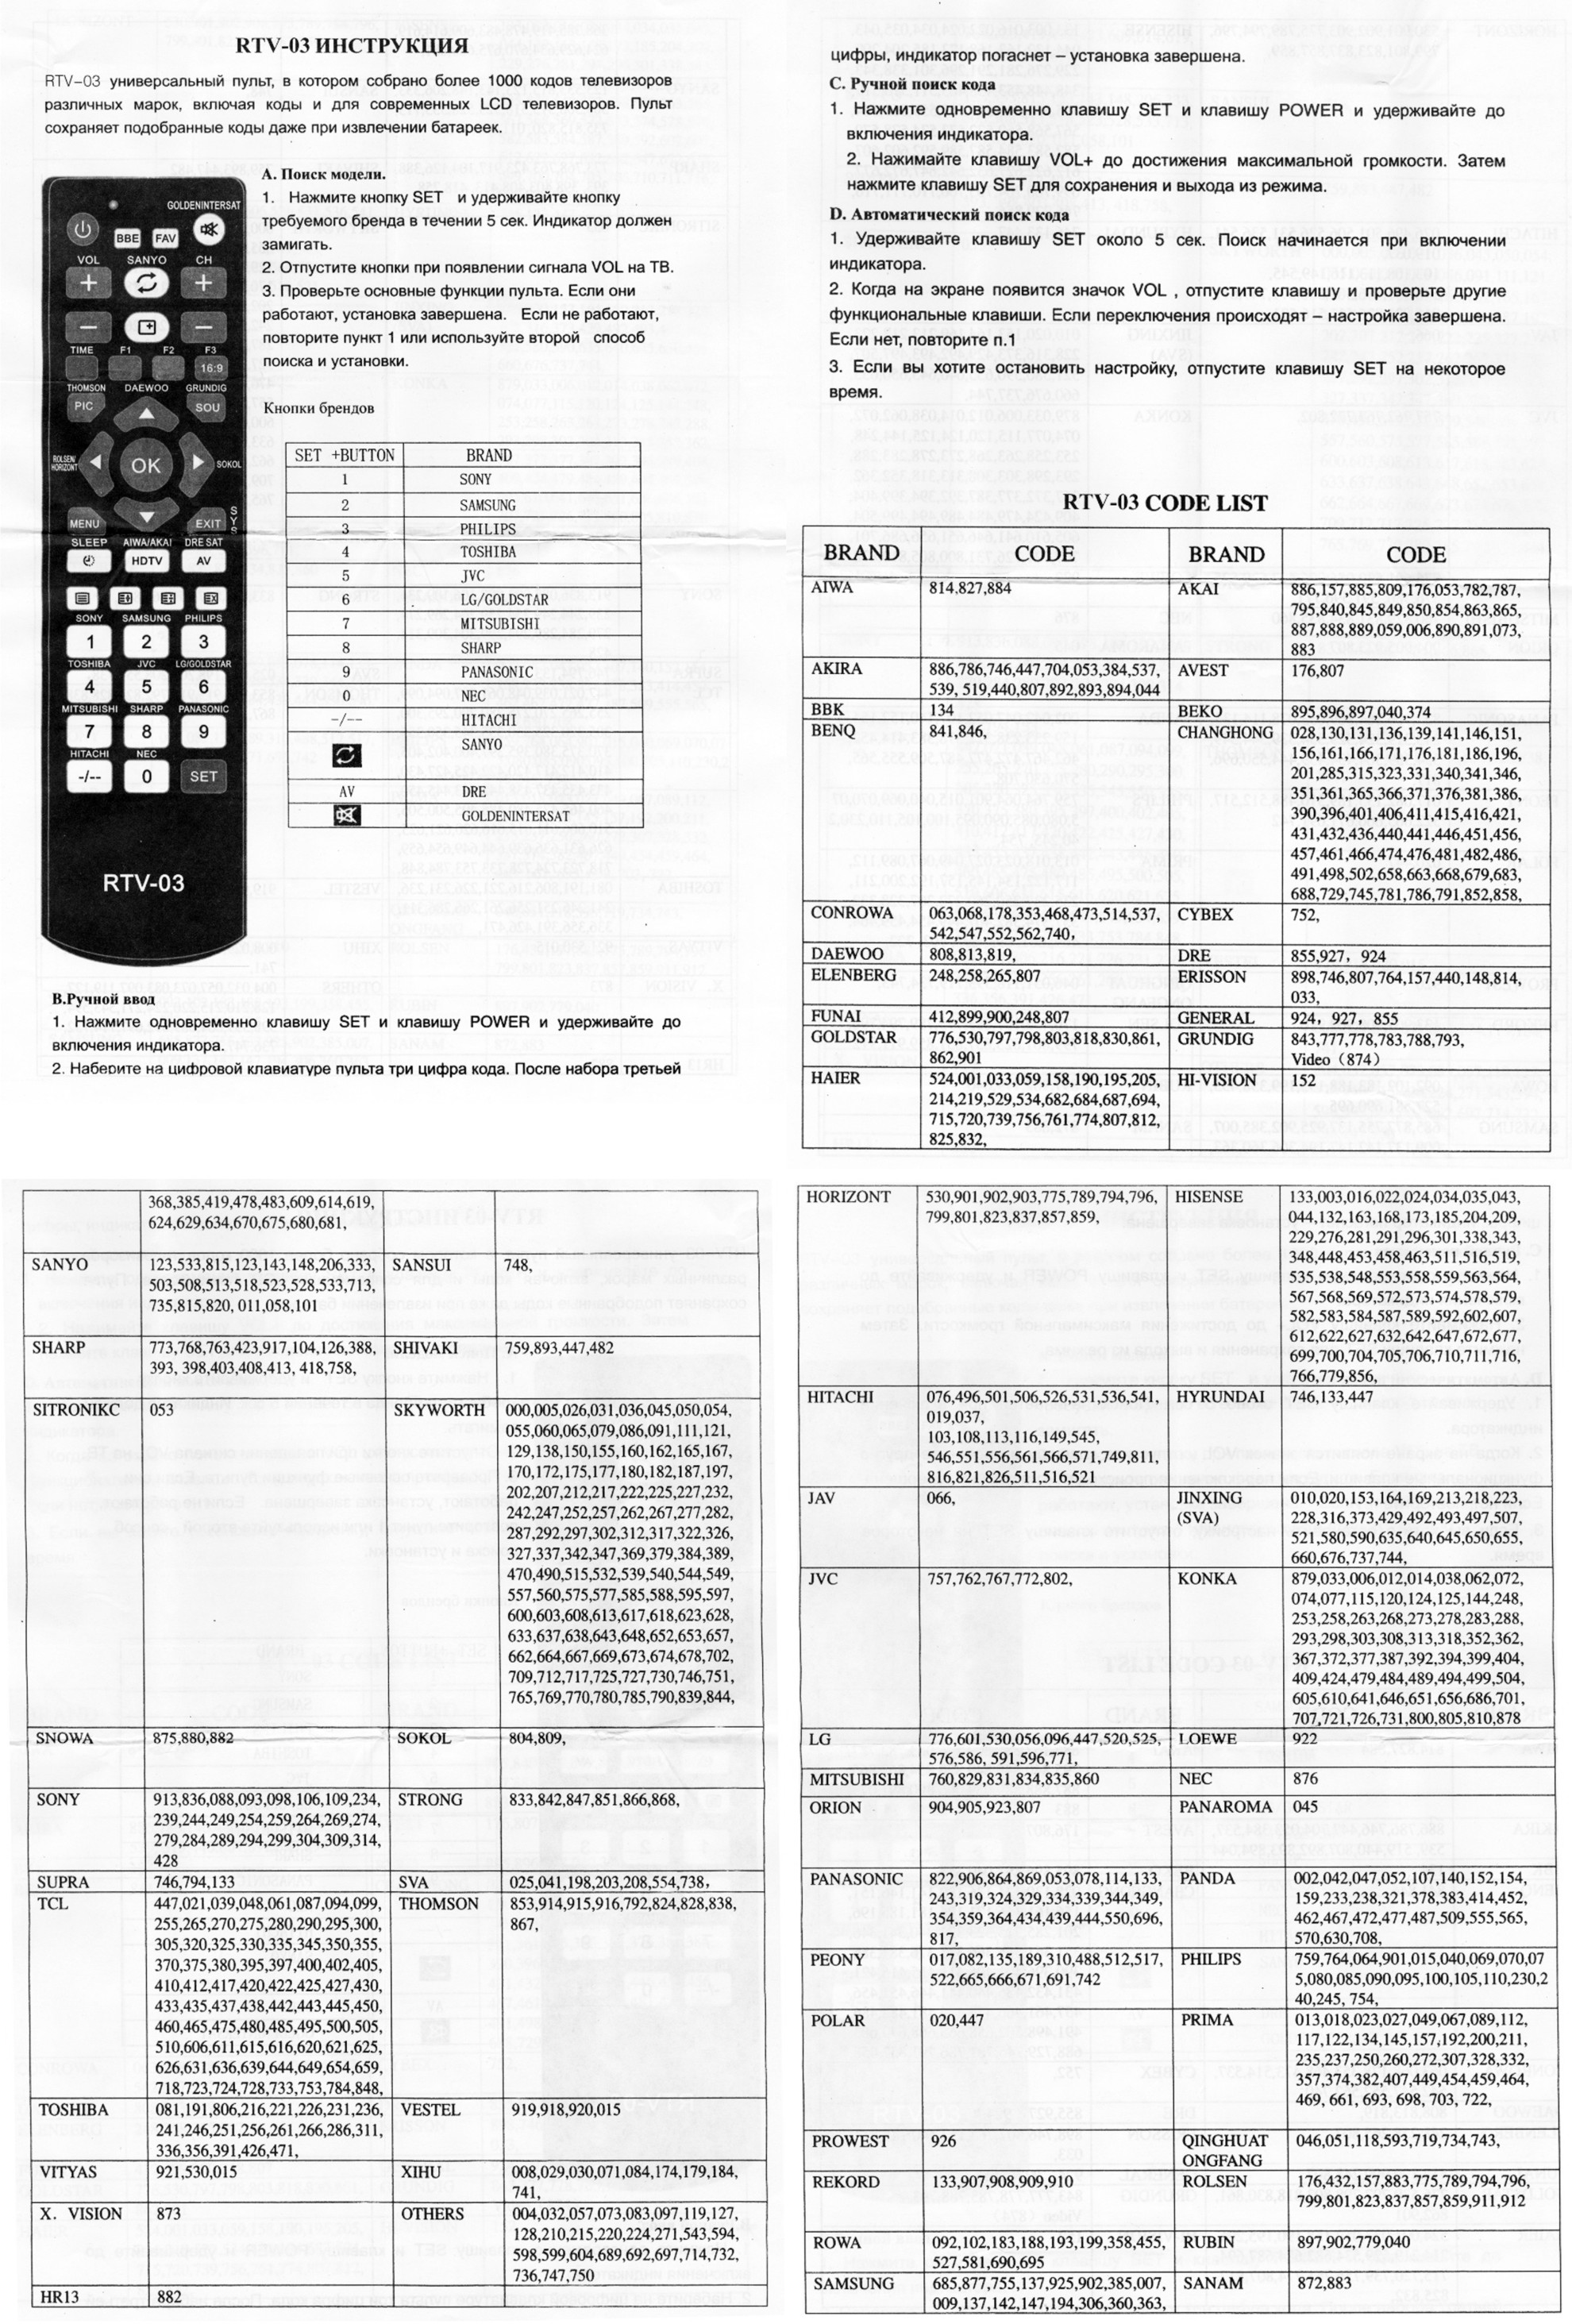 Универсальный код для lg телевизоров. Коды для универсального пульта для телевизора Sanyo. Коды для универсального пульта для телевизора Daewoo. Универсальный пульт для телевизора DZ-498 коды. Универсальный пульт RTV-03 для телевизора коды для Sharp.